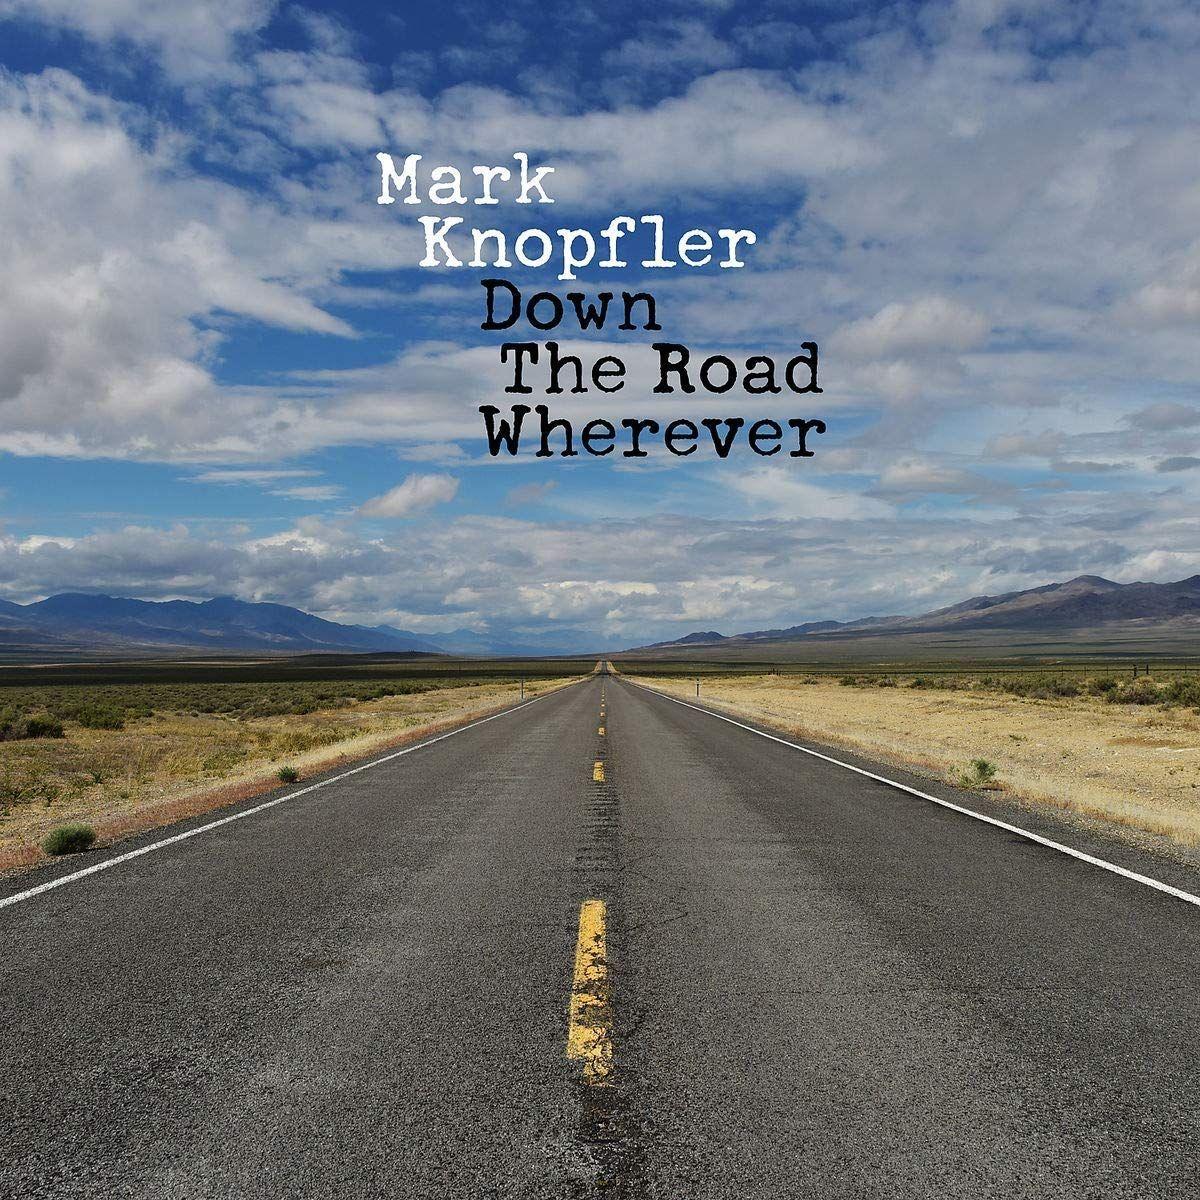 Couverture de l'album "Down the Road Wherever" de Mark Knopfler